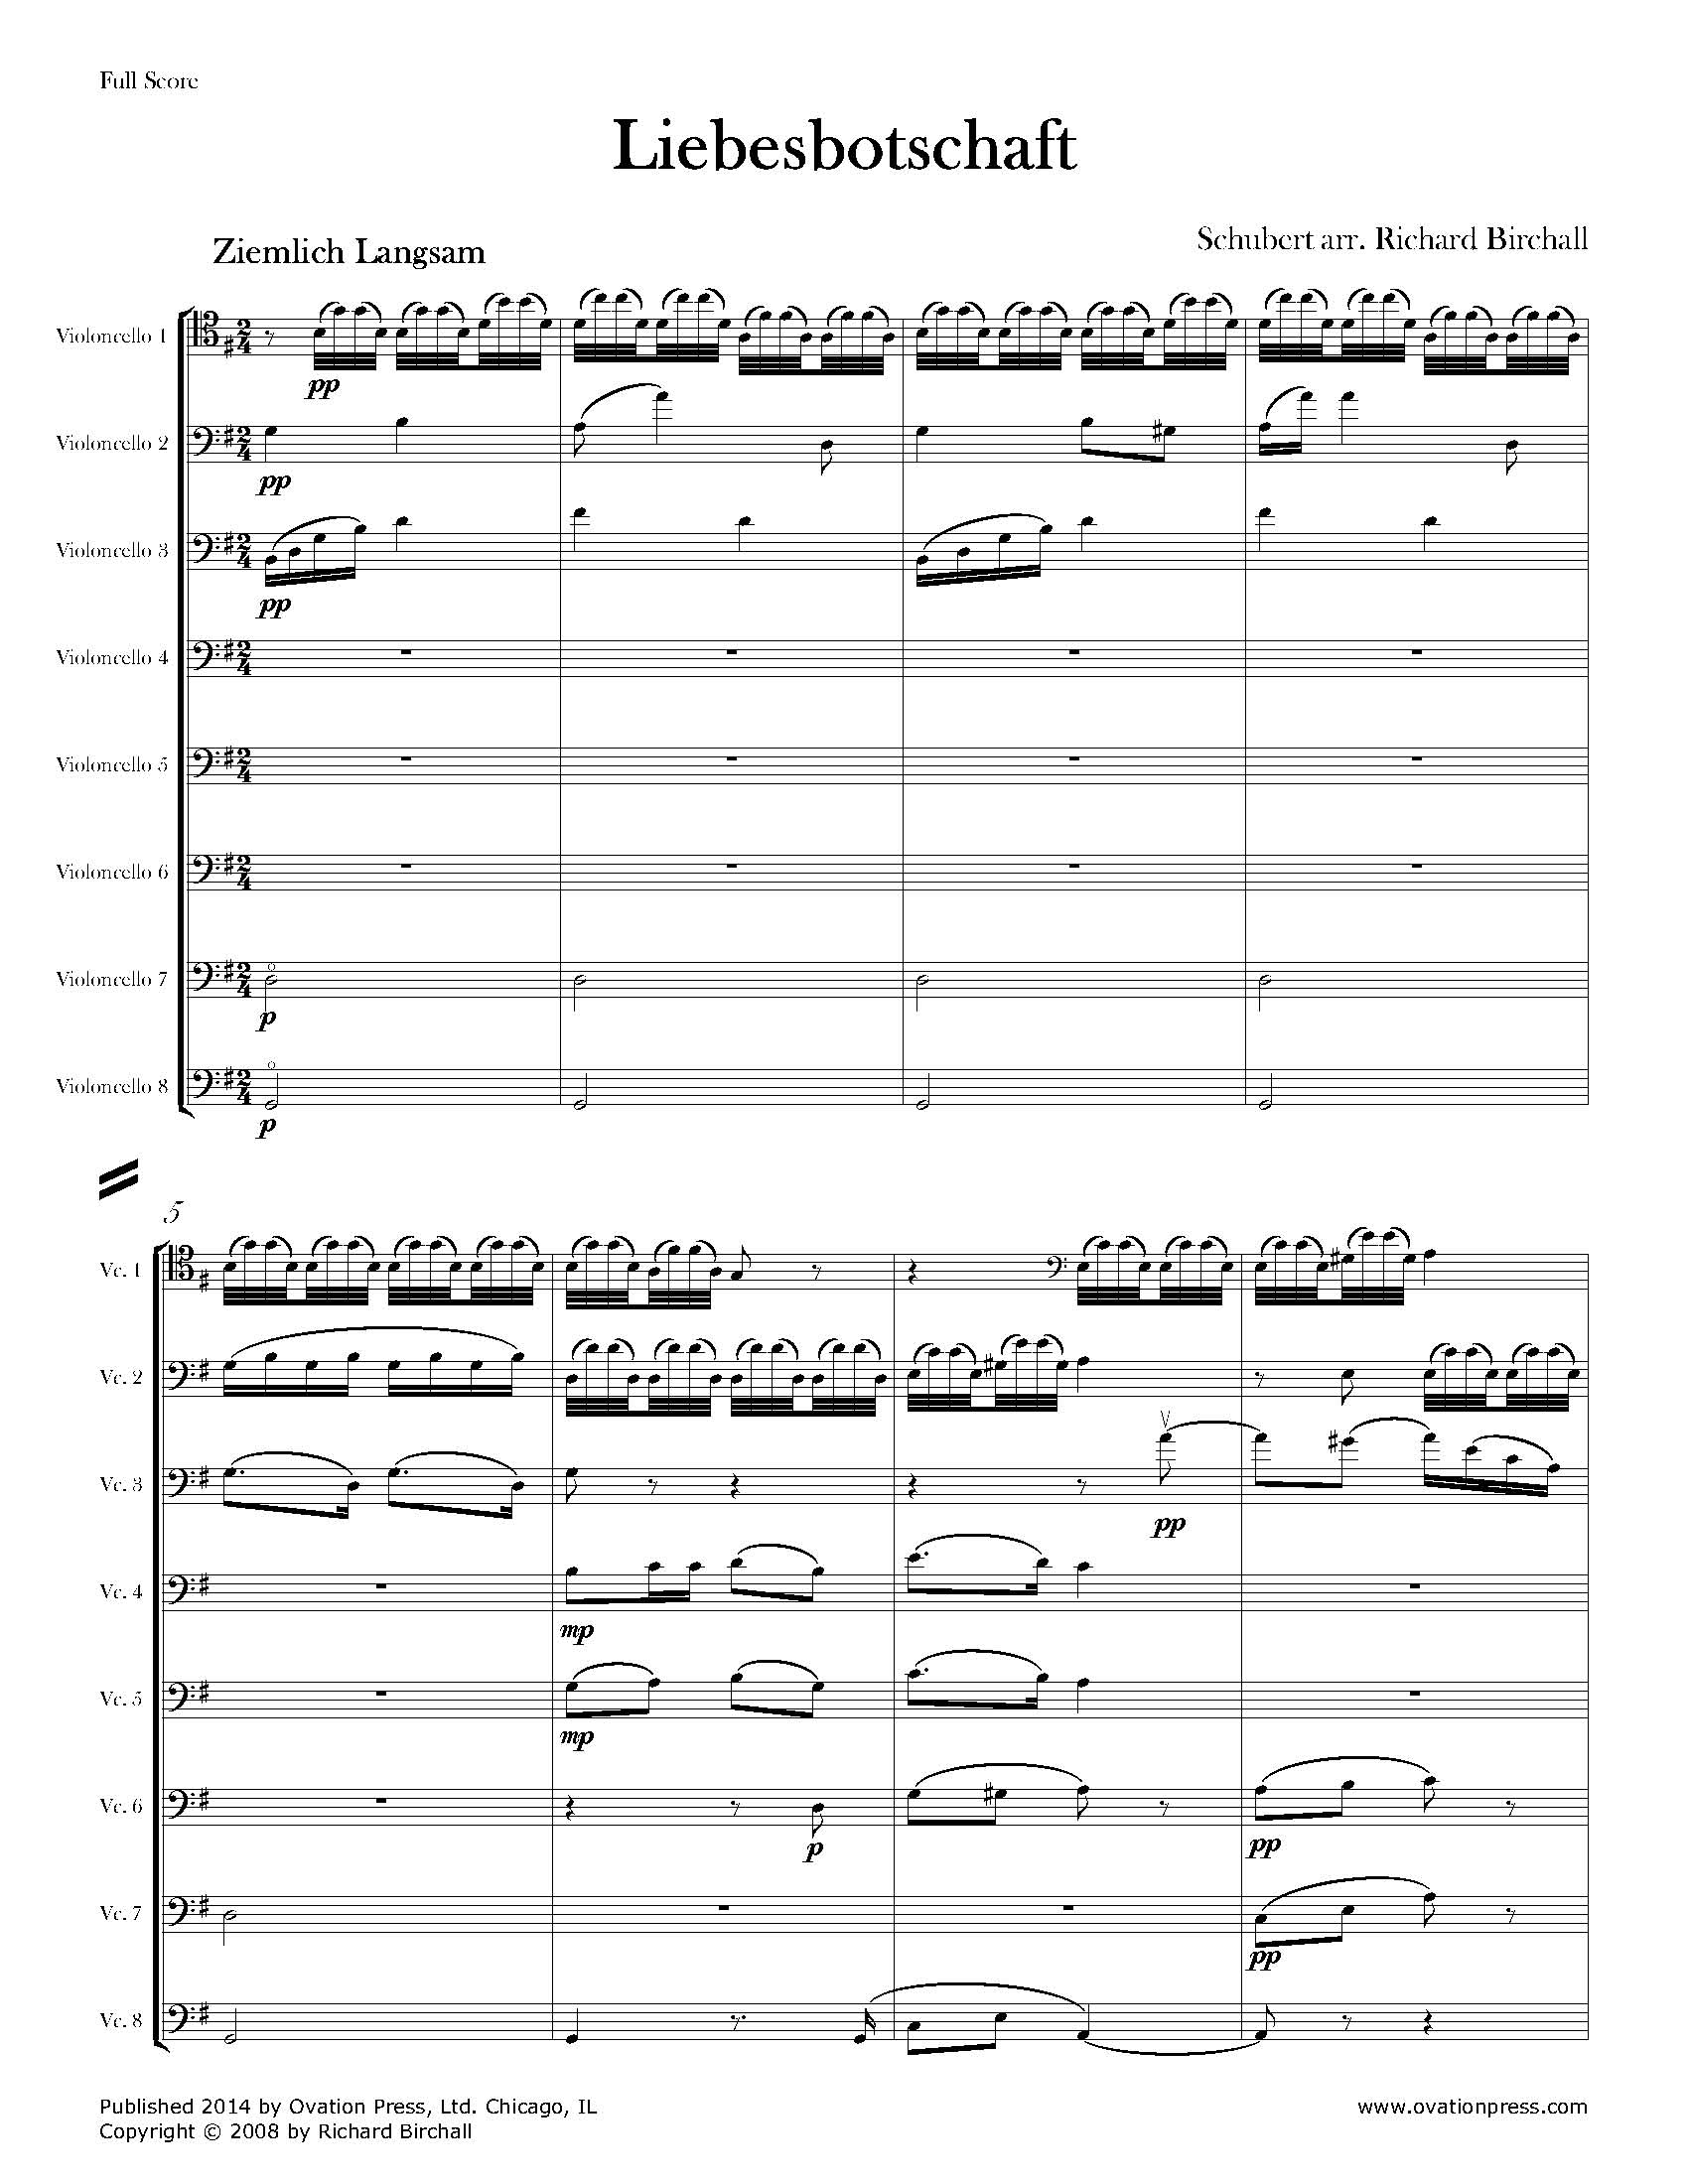 Schubert Three Songs from Schwanengesang Arranged for Cello Octet